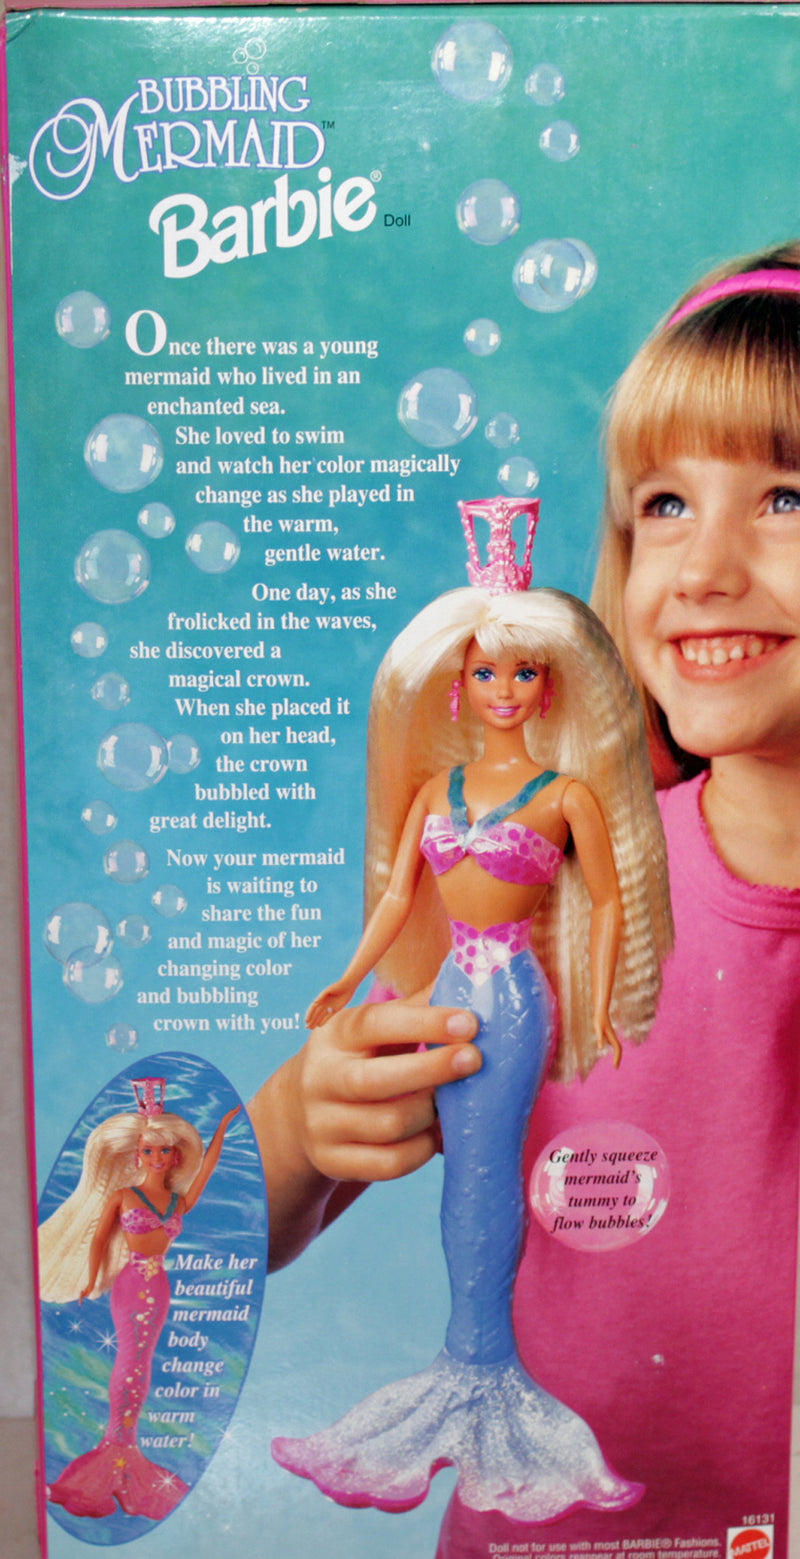 1996 Bubbling Mermaid Barbie (16131)